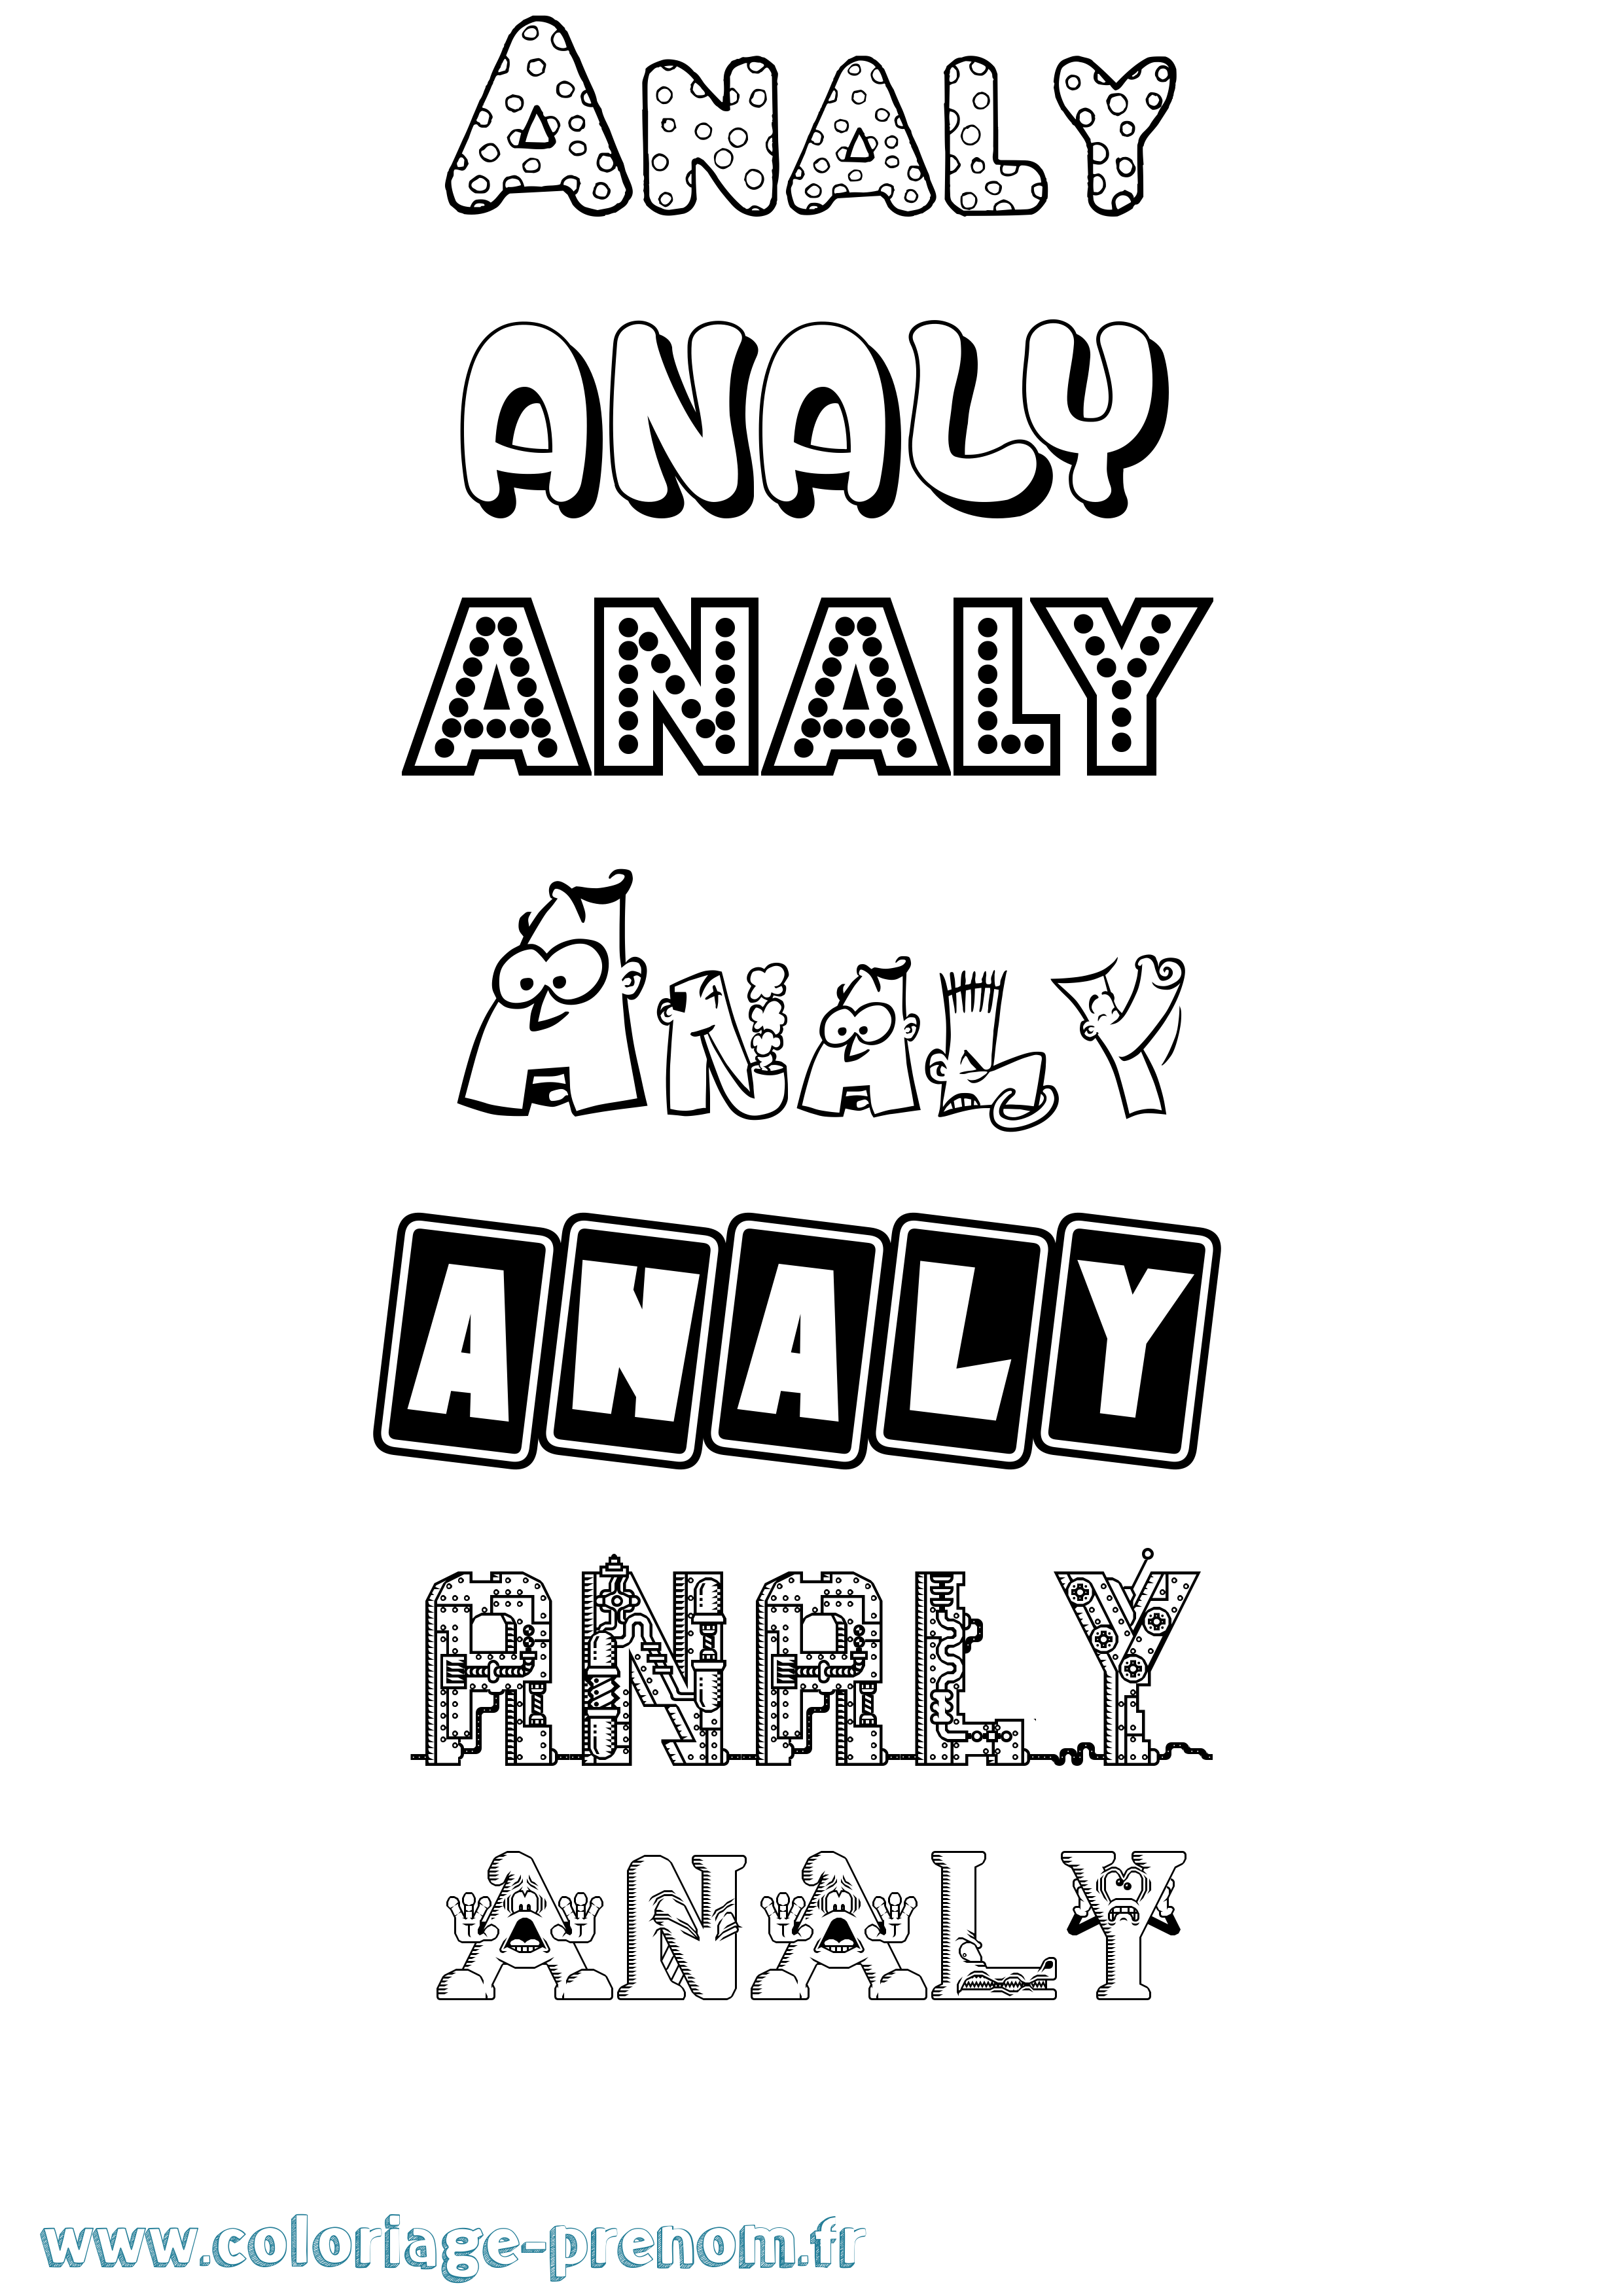 Coloriage prénom Analy Fun